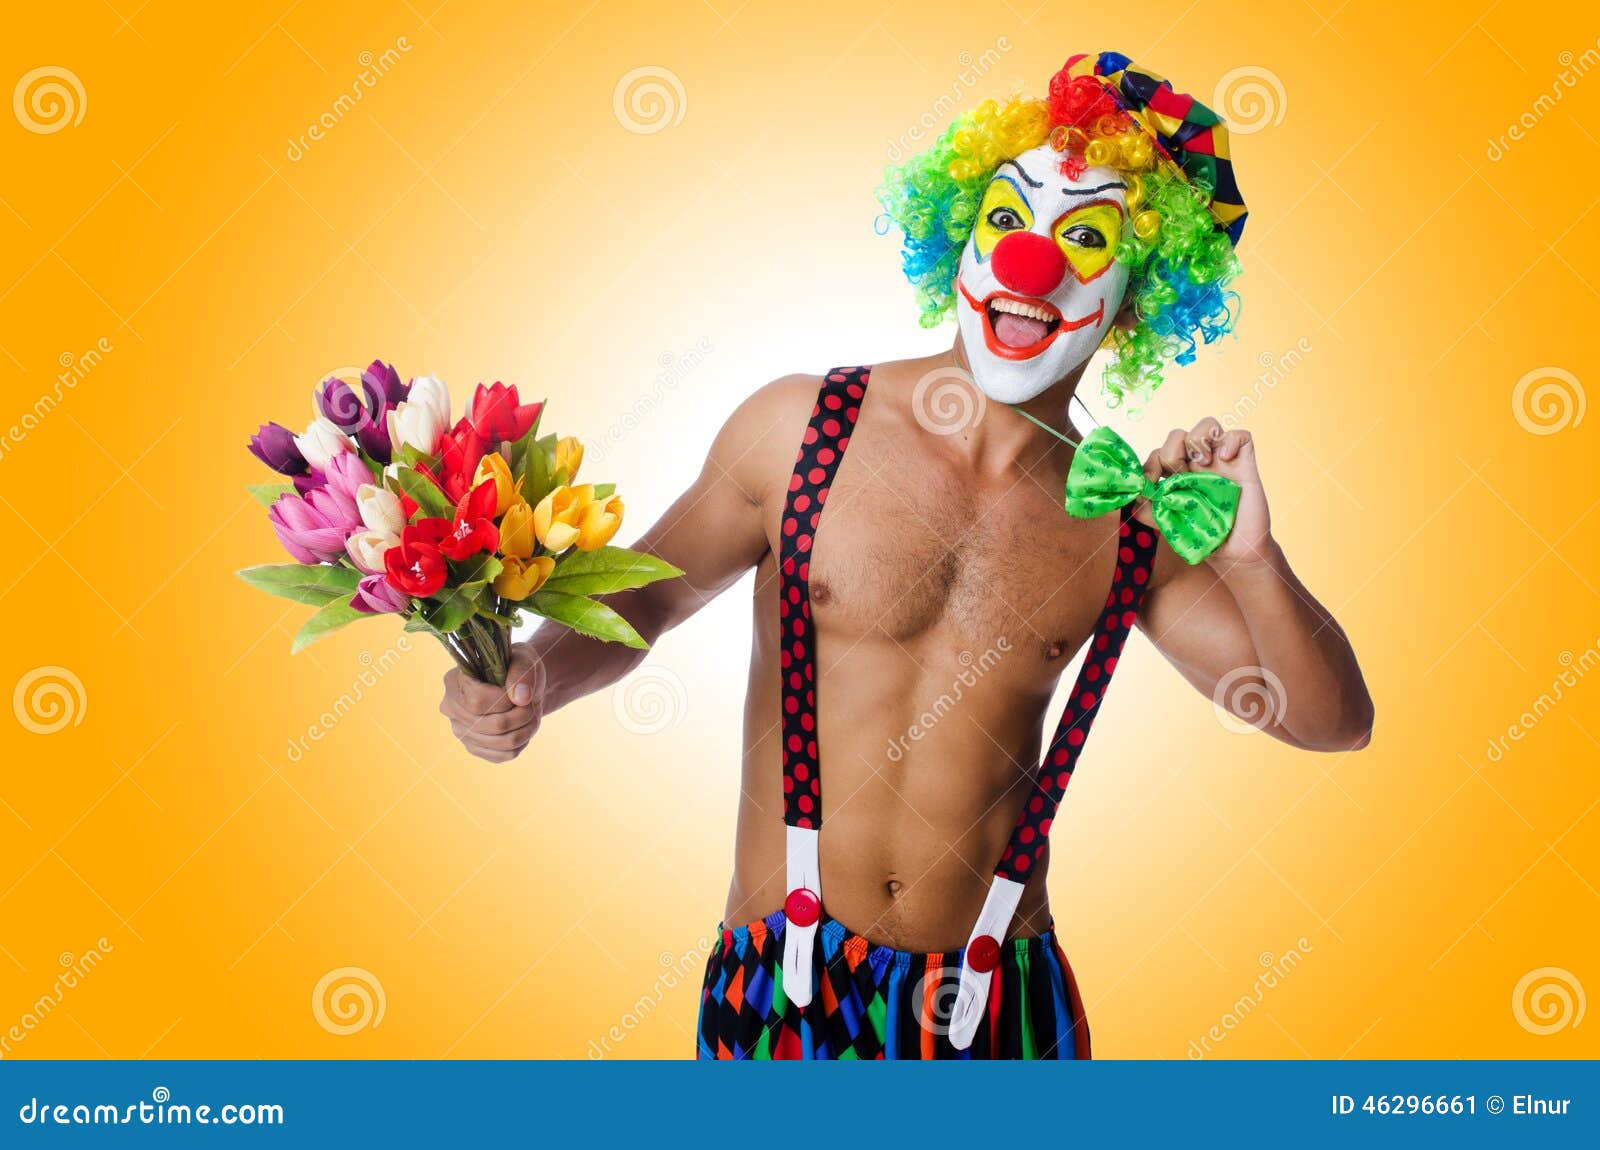 Клоун растение. Клоун с цветком. Клоун с розами в руках.